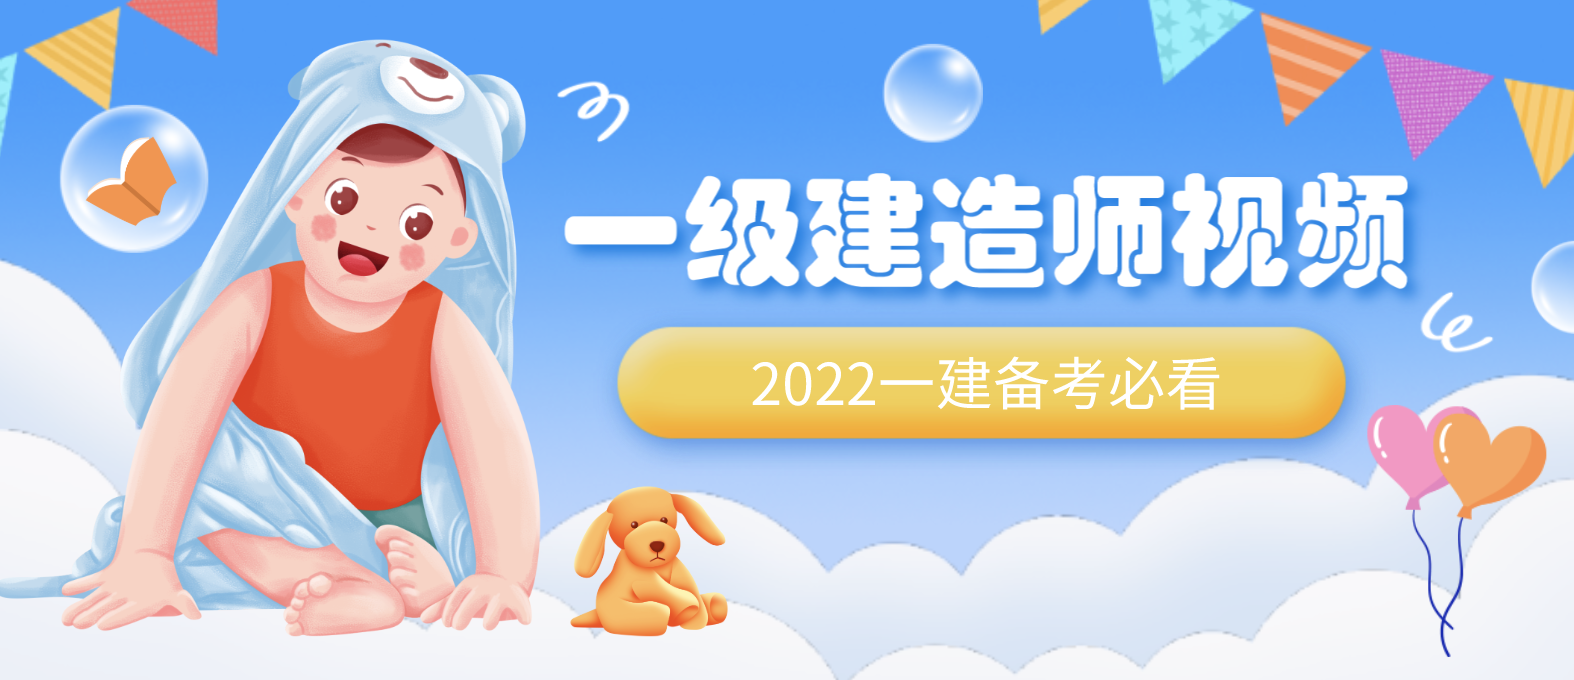 刘永强2022年一建水利精讲视频教程全集【重点推荐】